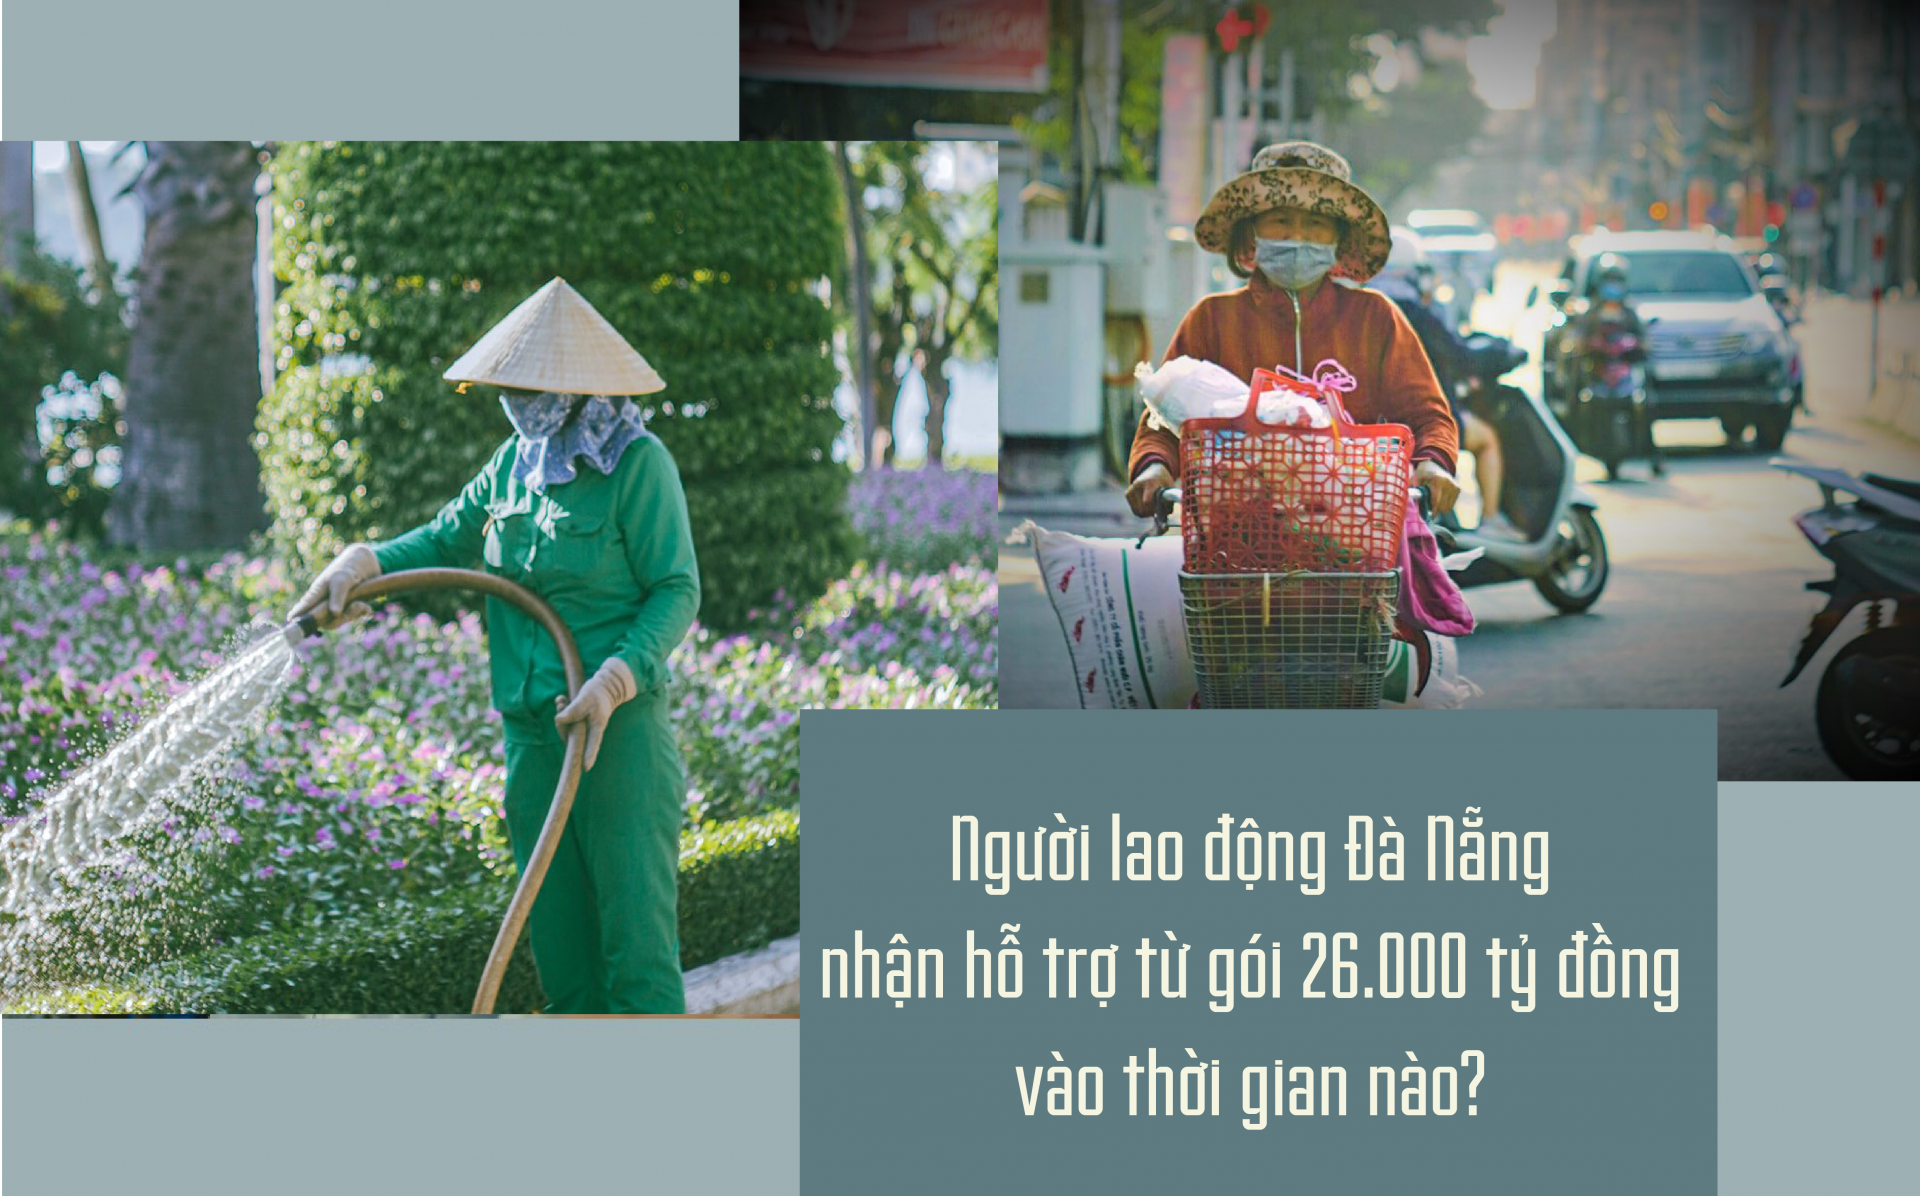 Đà Nẵng: Người lao động nhận hỗ trợ từ gói 26.000 tỷ đồng vào thời gian nào?